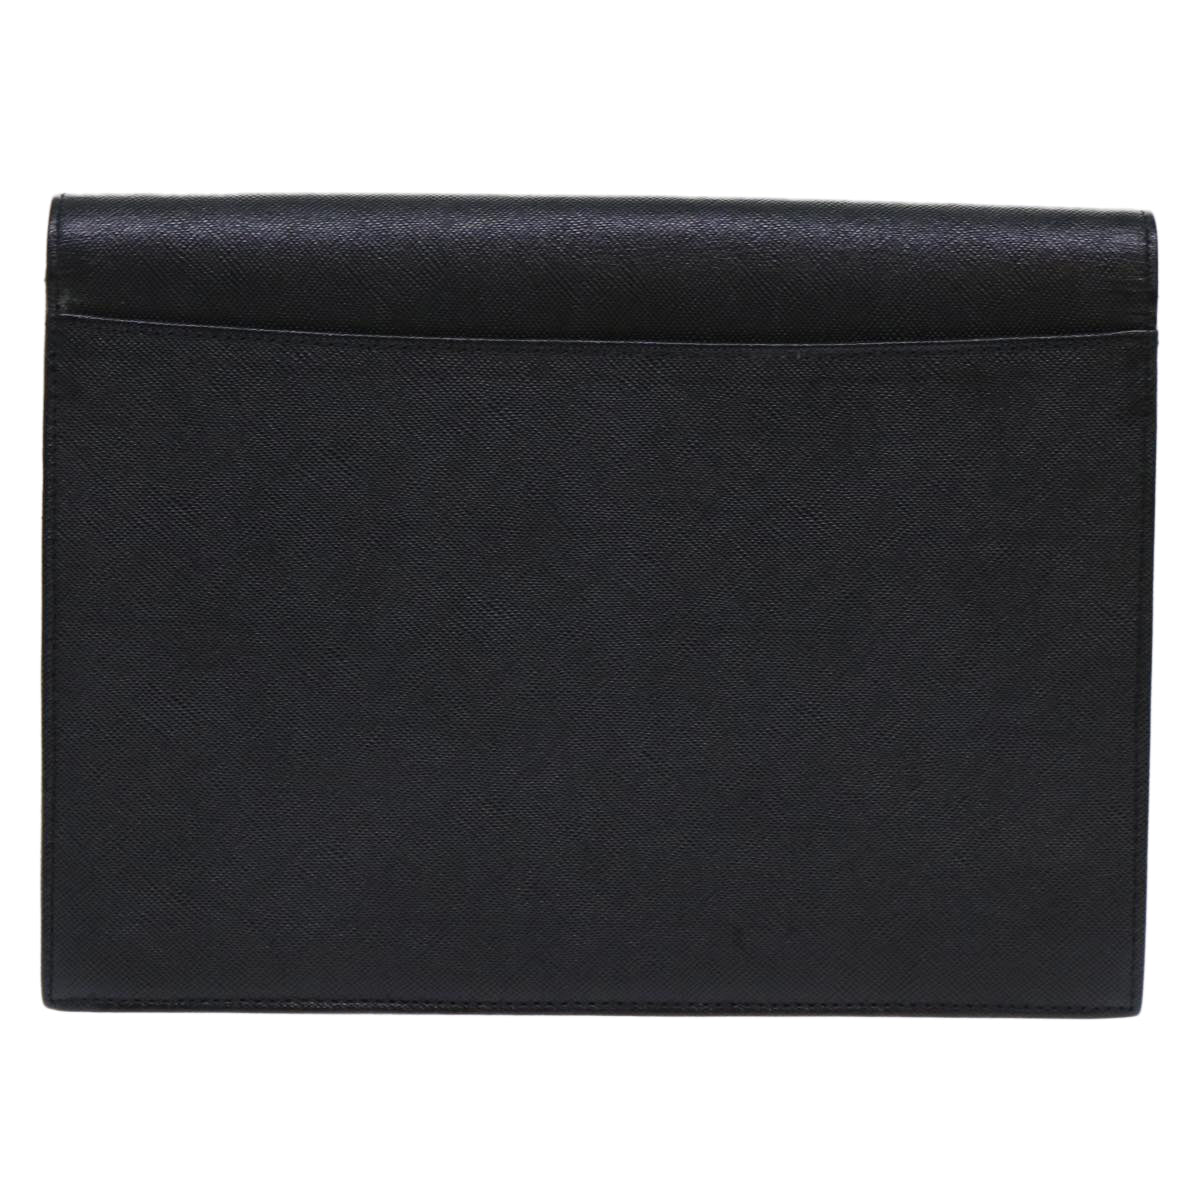 SAINT LAURENT Clutch Bag Leather Black Auth am4881 - 0